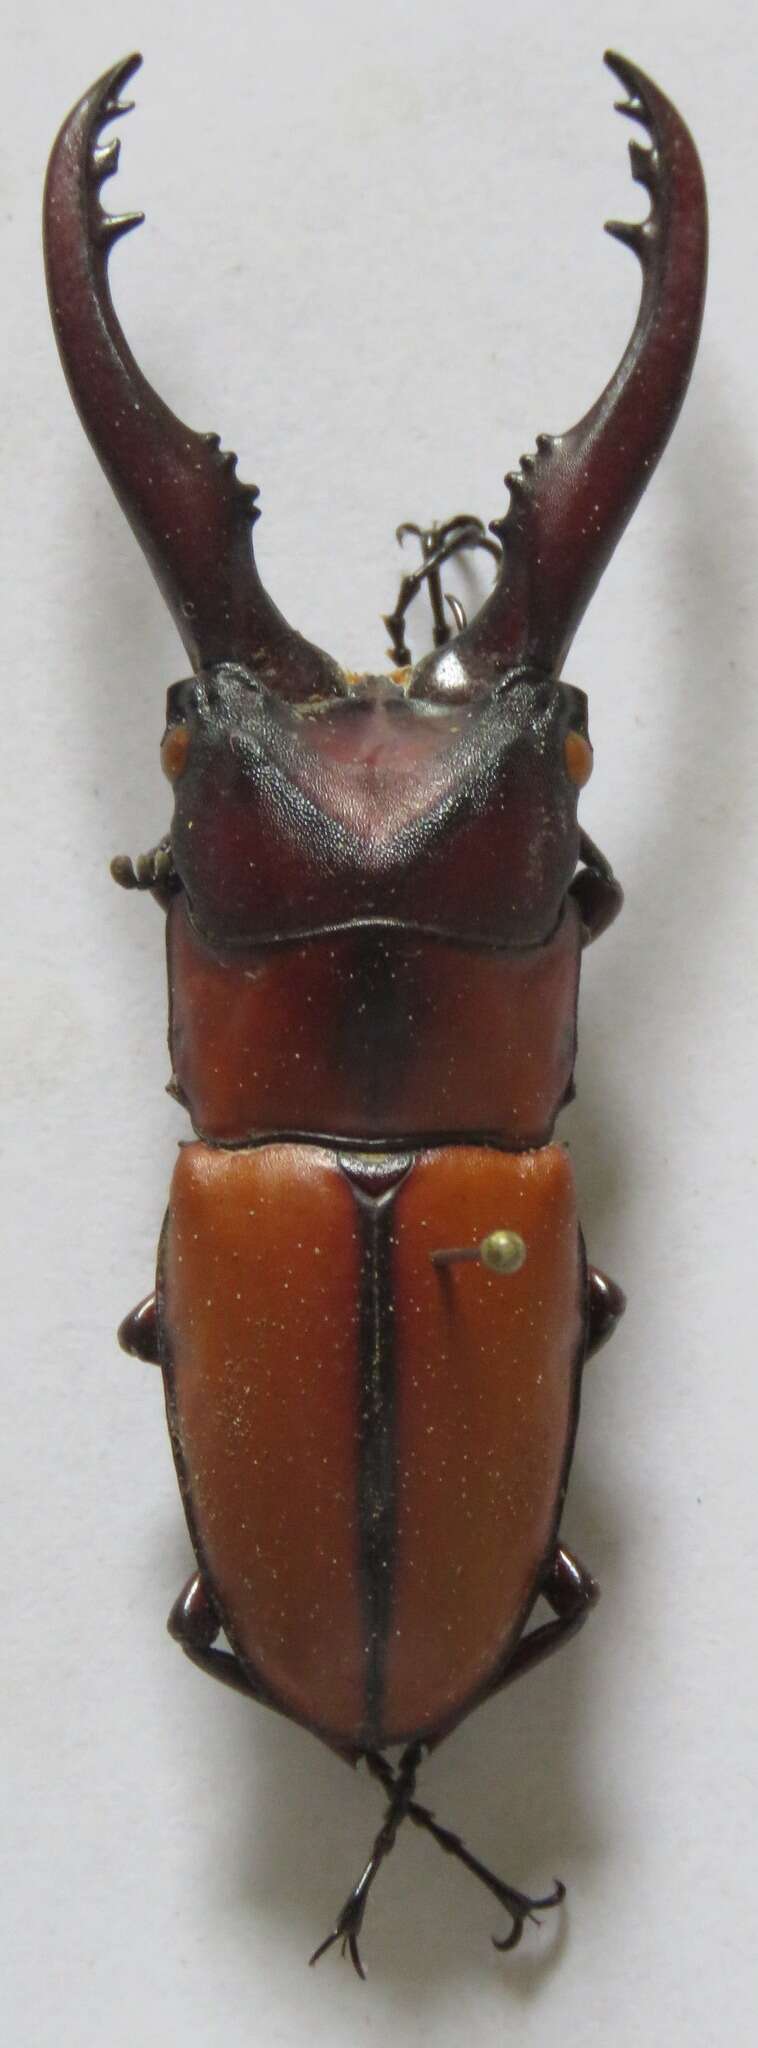 Image of Prosopocoilus mohnikei mohnikei